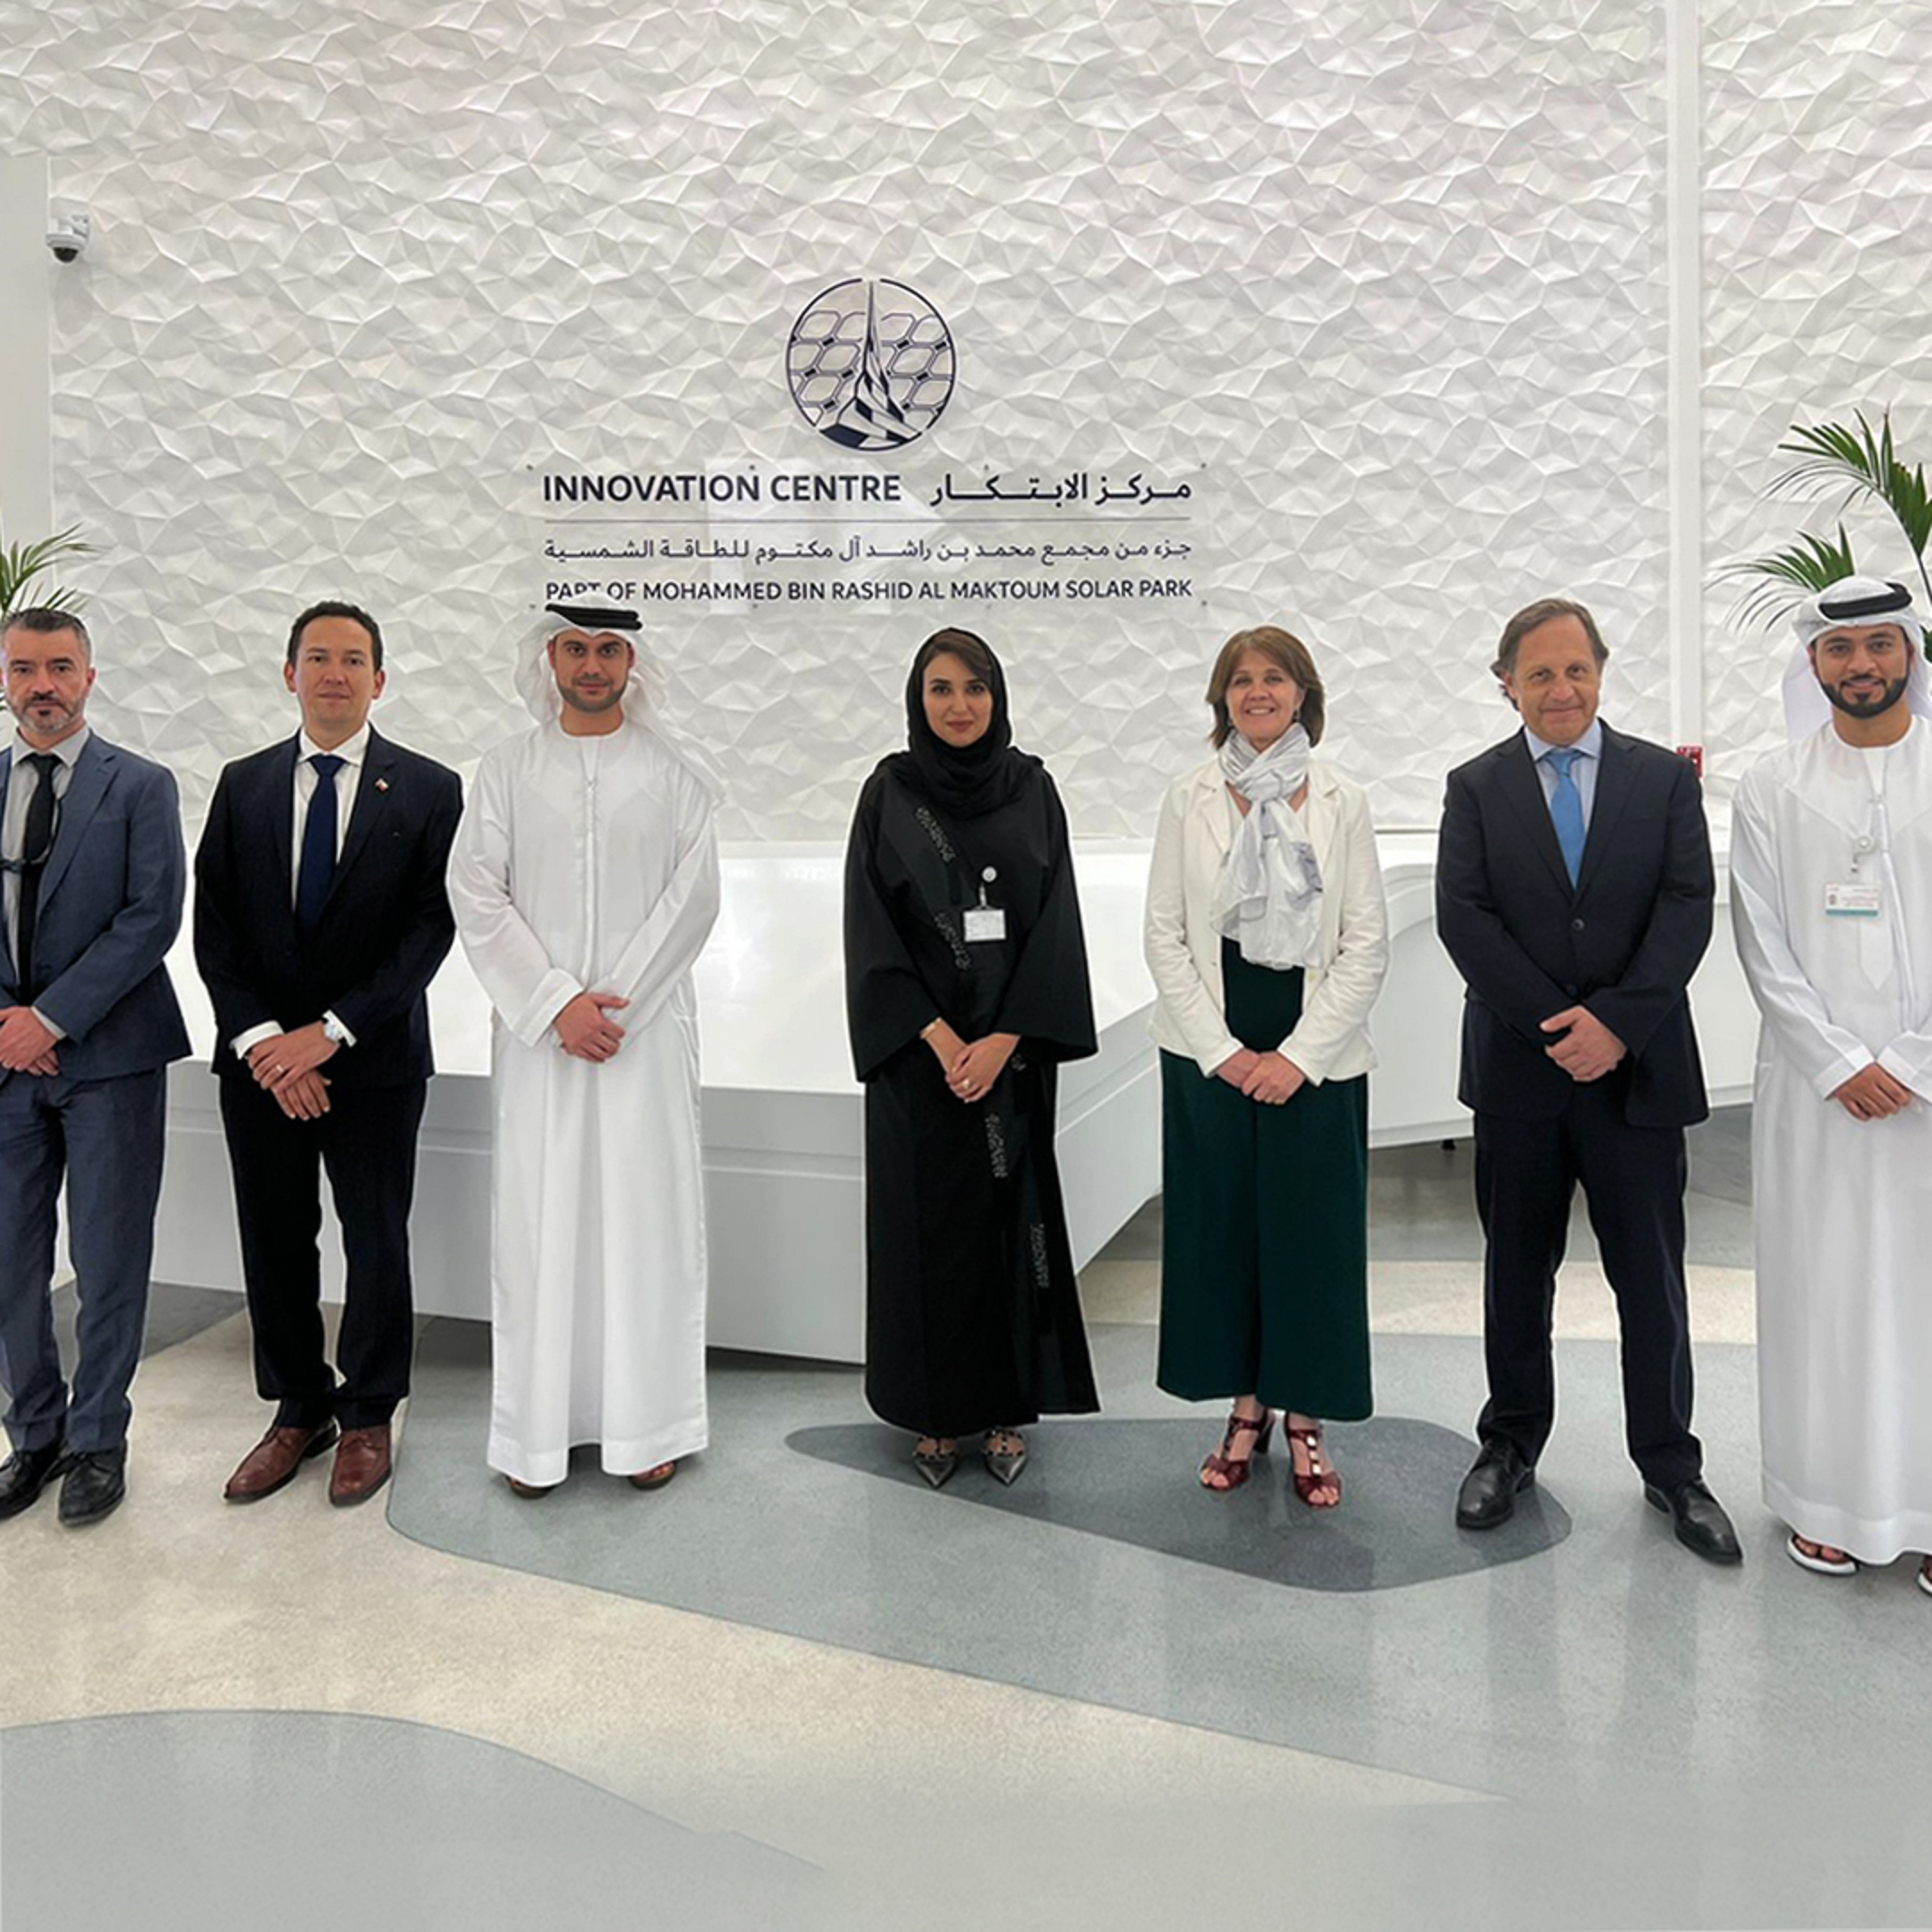 High-level delegation from Chile visits Mohammed bin Rashid Al Maktoum Solar Park in Dubai